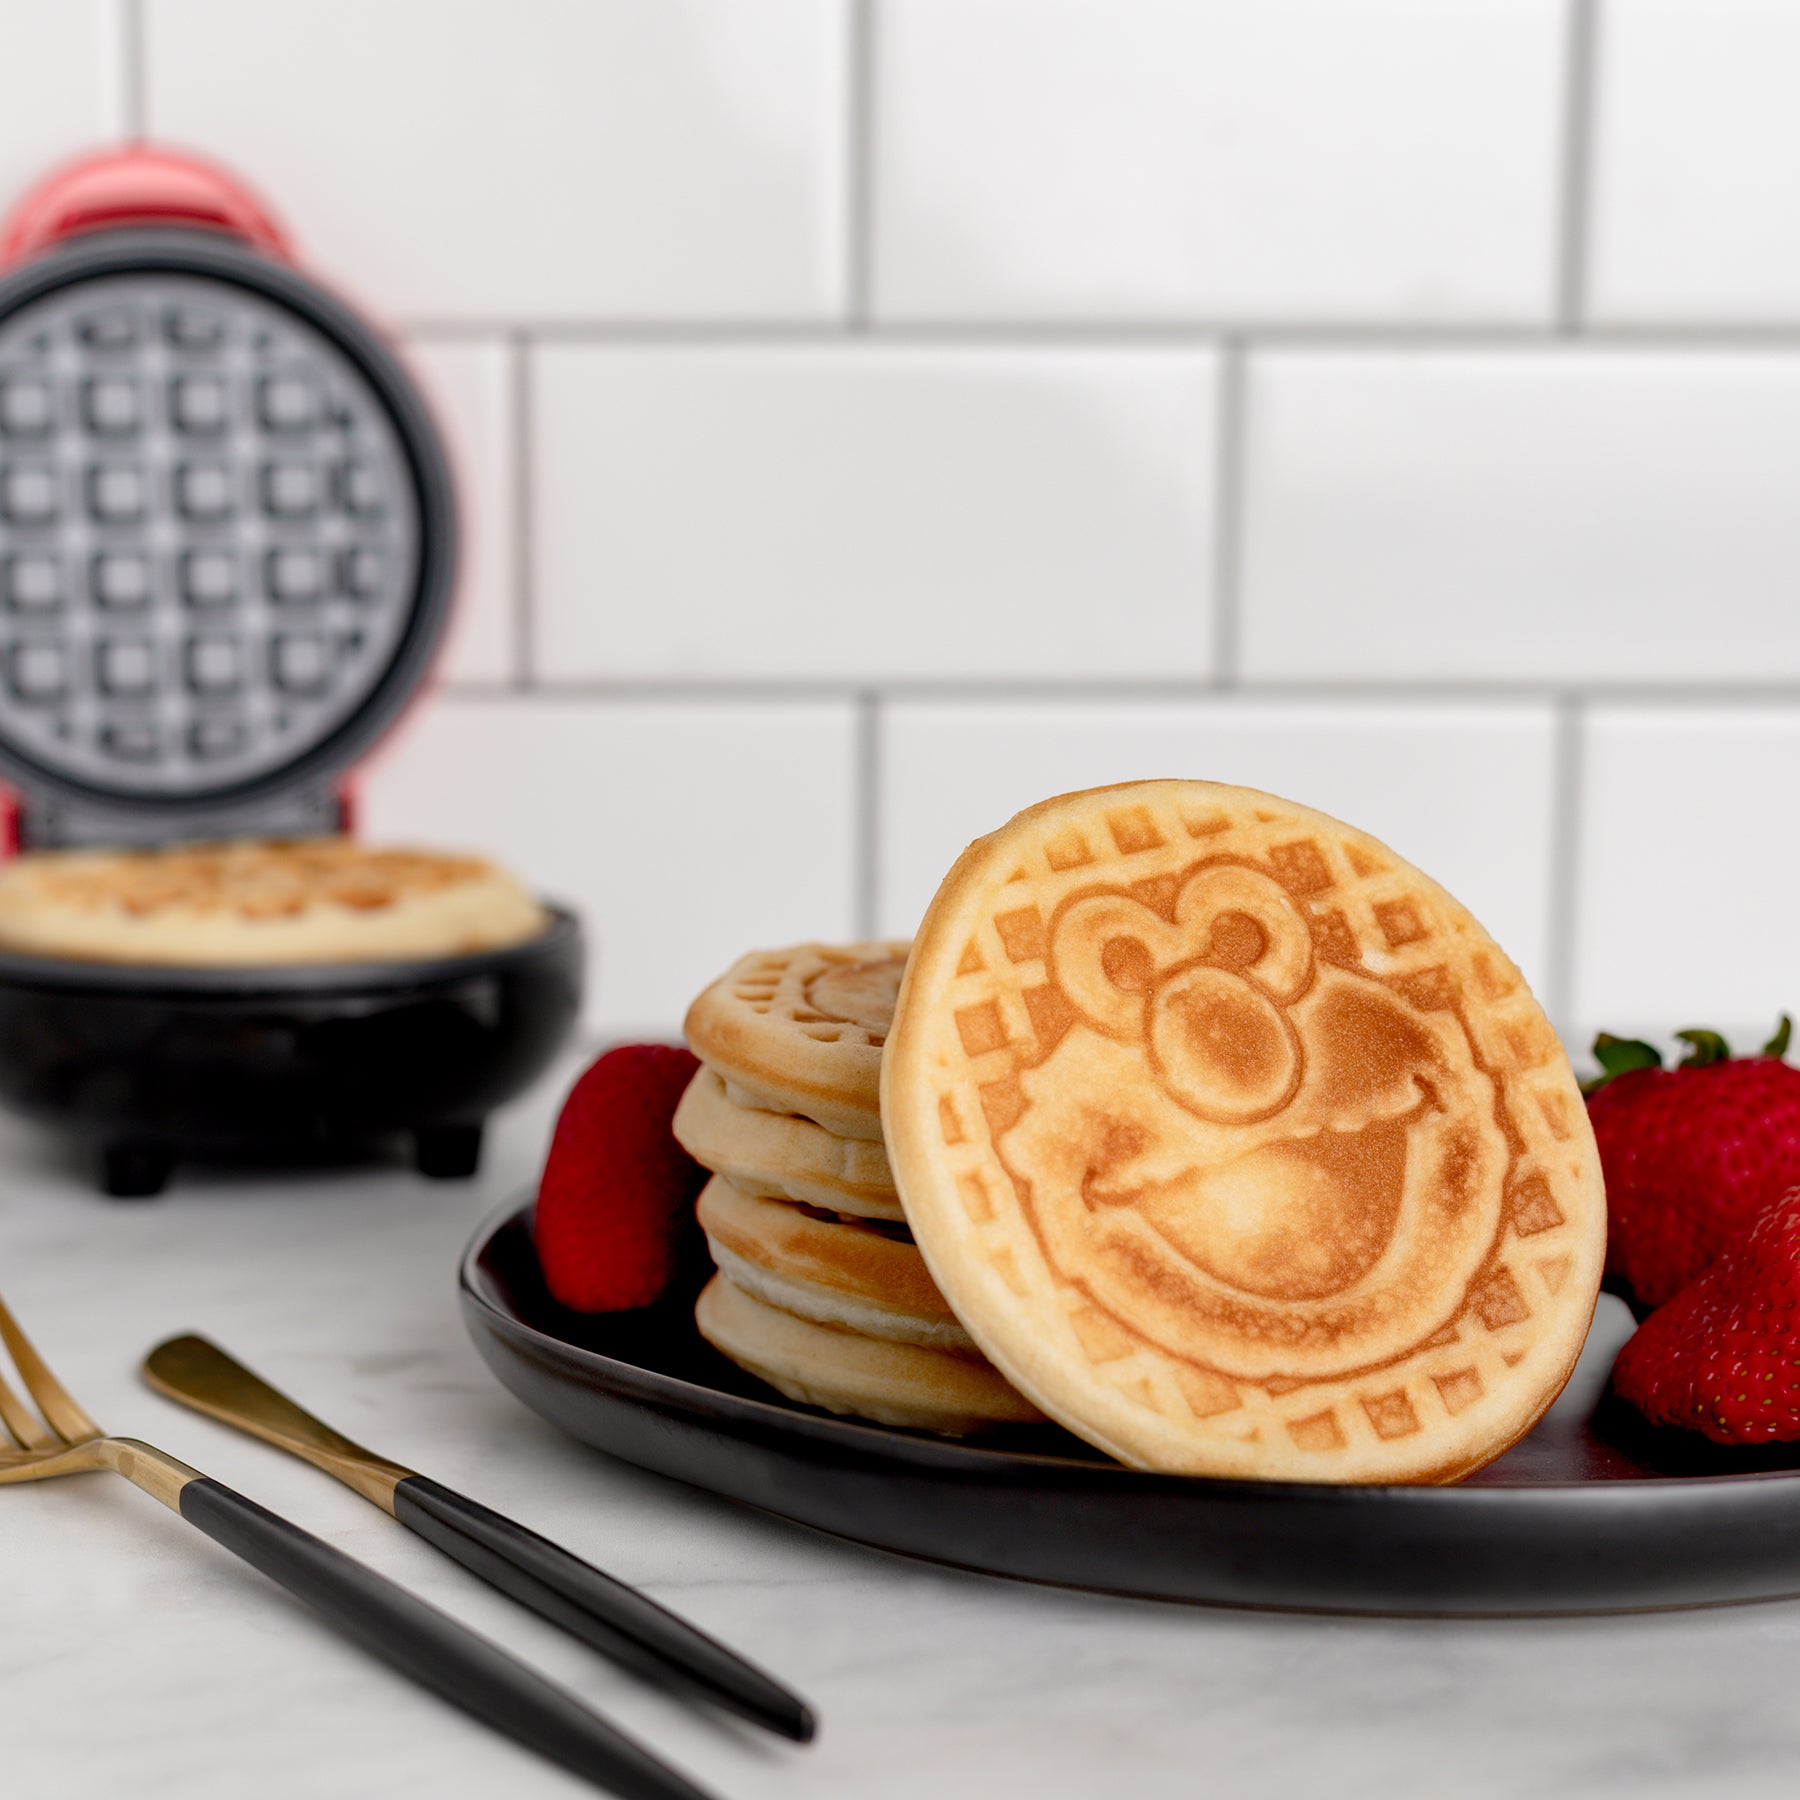 Hello Kitty Mini Waffle Maker